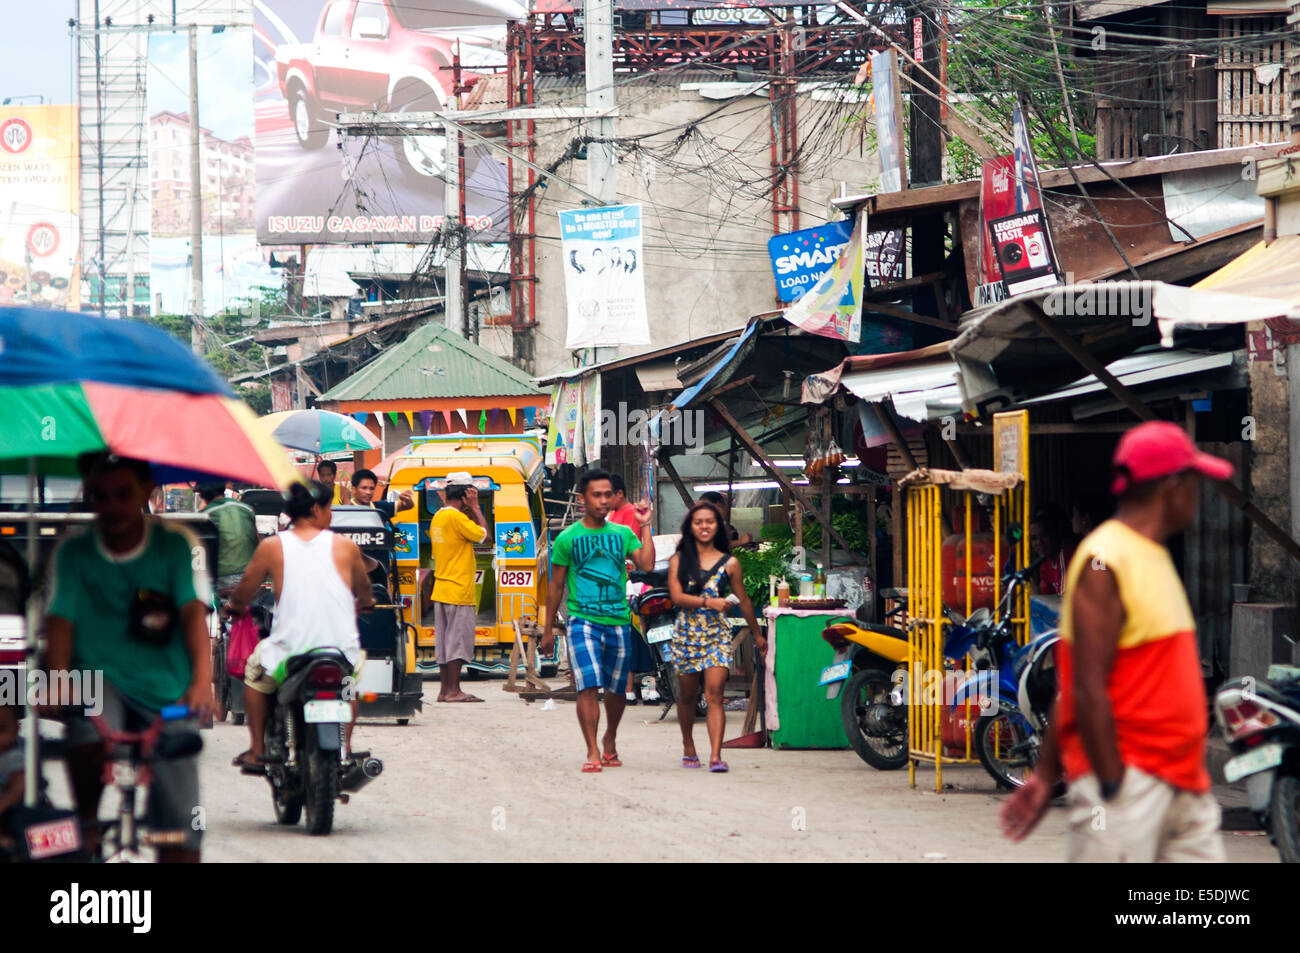 Street scene, CBD, Cagayan de Oro, Misamis Oriental, Mindanao, Philippines Stock Photo